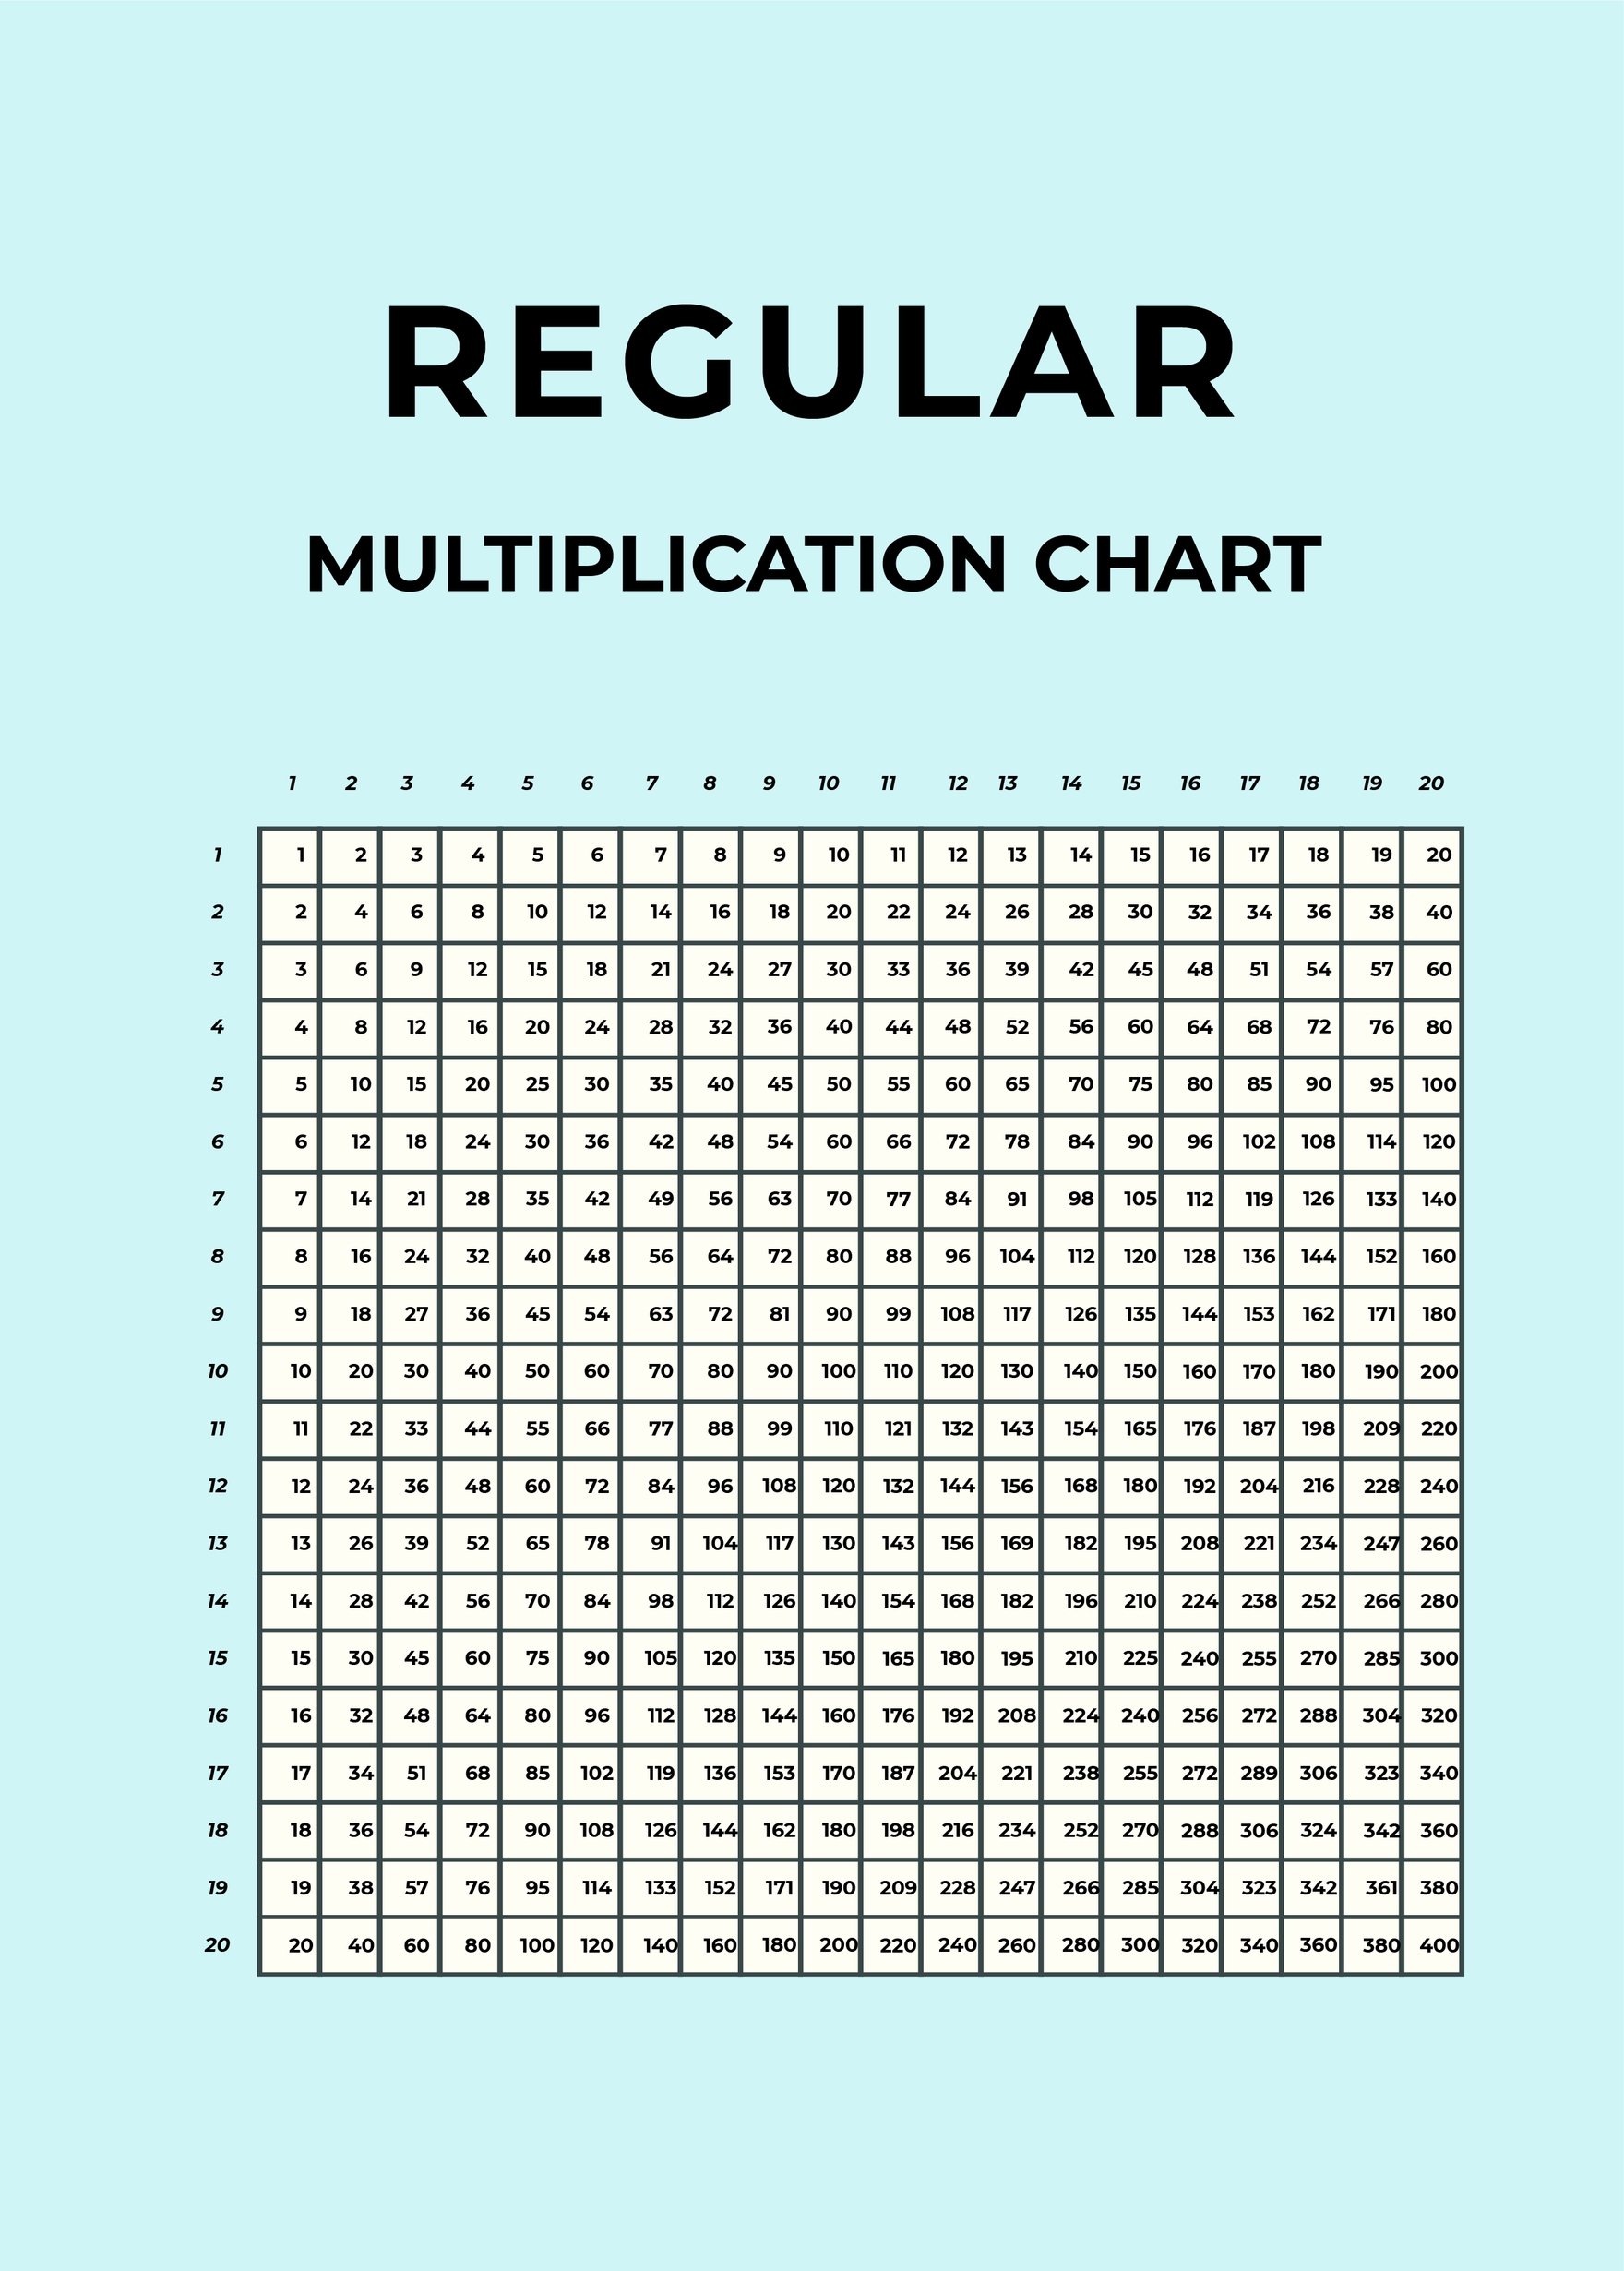 Regular Multiplication Chart